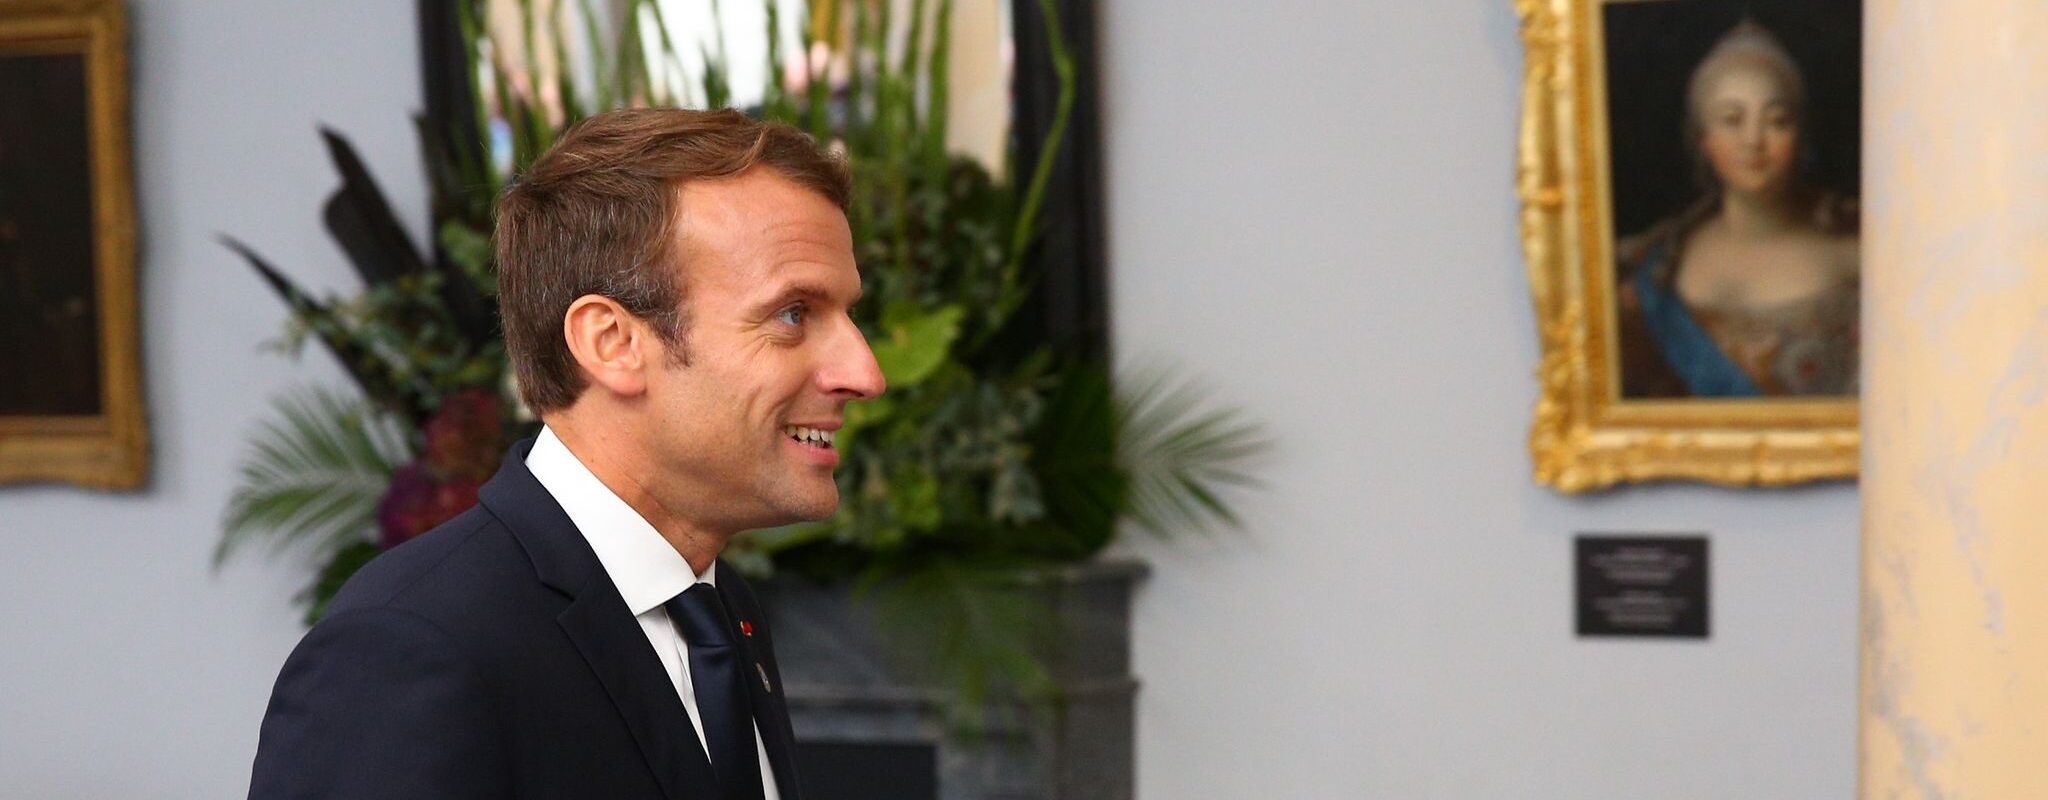 Emmanuel Macron profite de l’effondrement de la droite et remporte le vote en Alsace